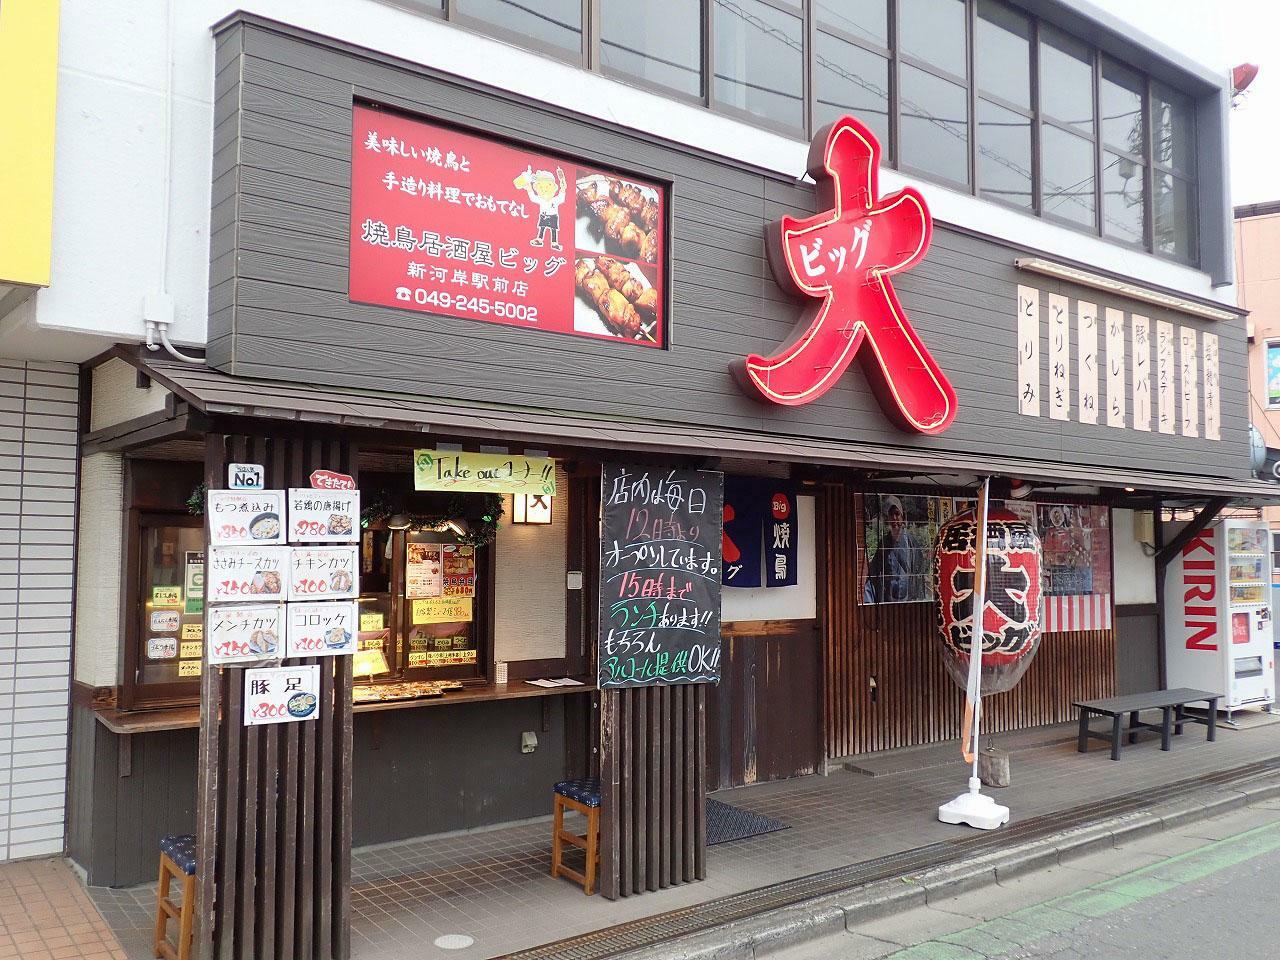 店舗は東武東上線・新河岸駅から徒歩約2分のところにあります